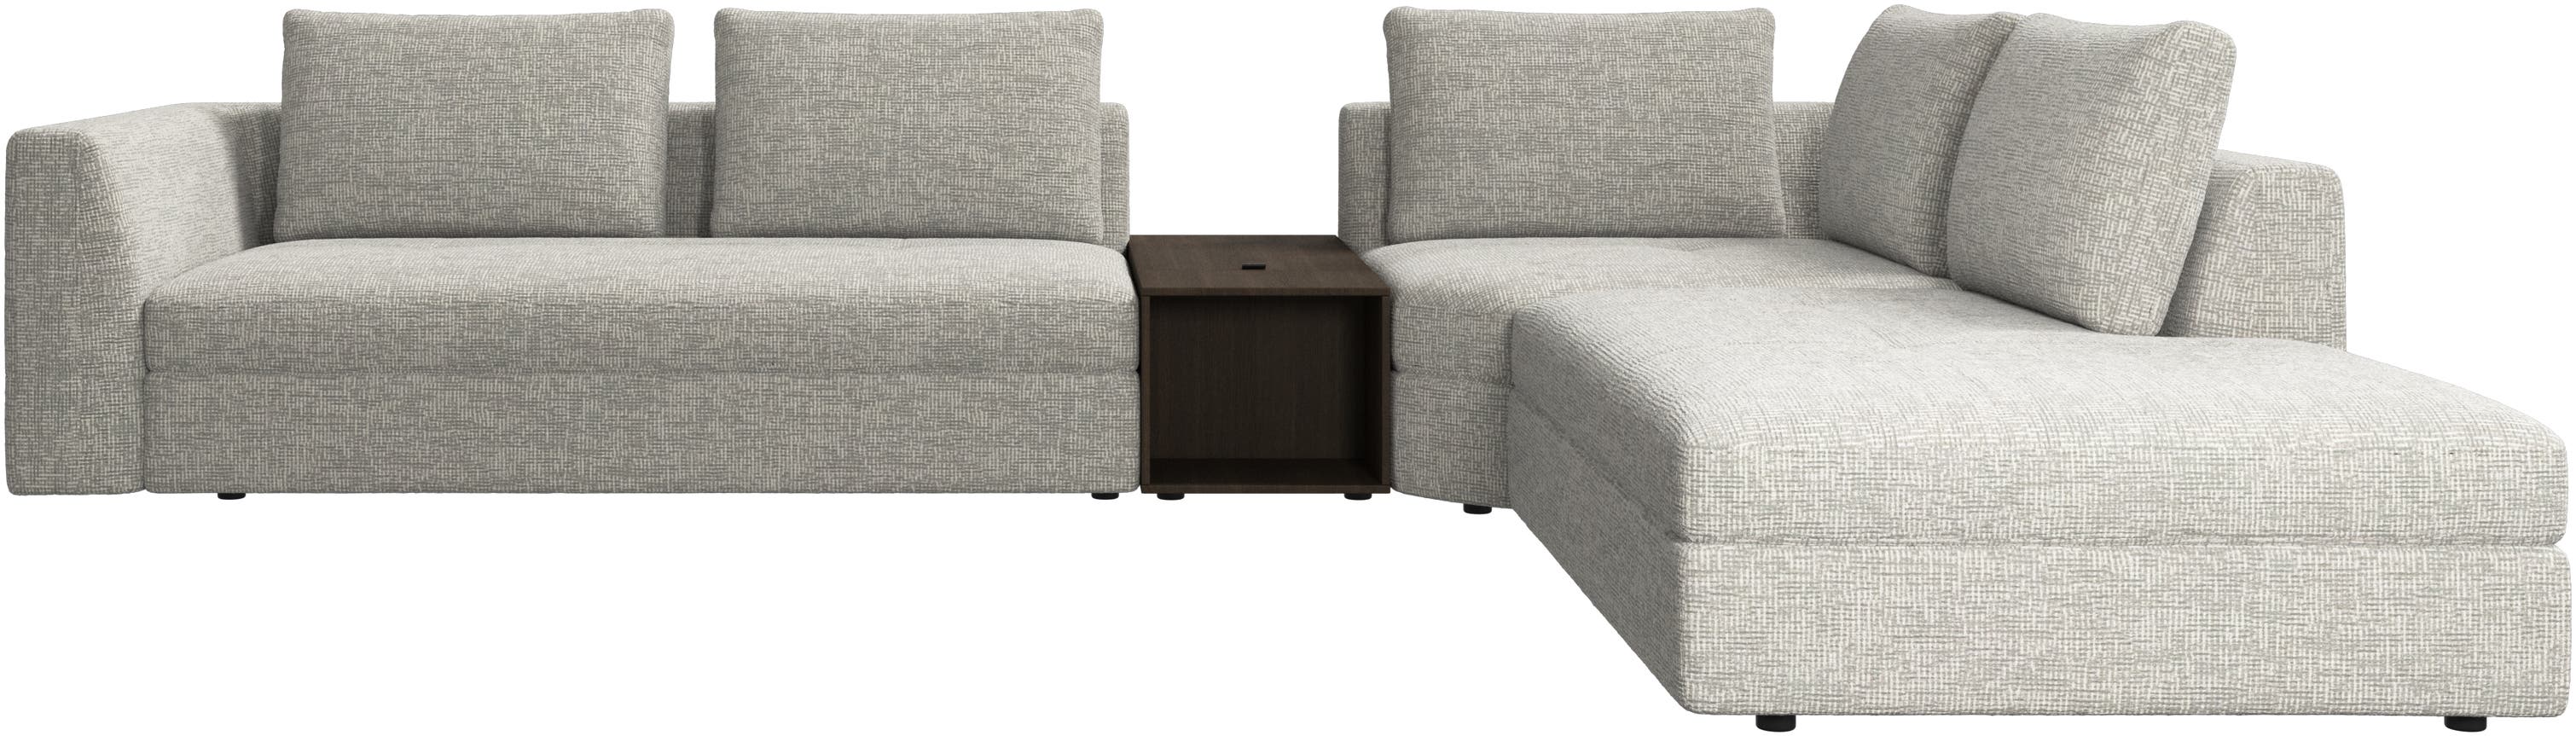 угловой диван Bergamo с модулем для отдыха и пуфом для хранения